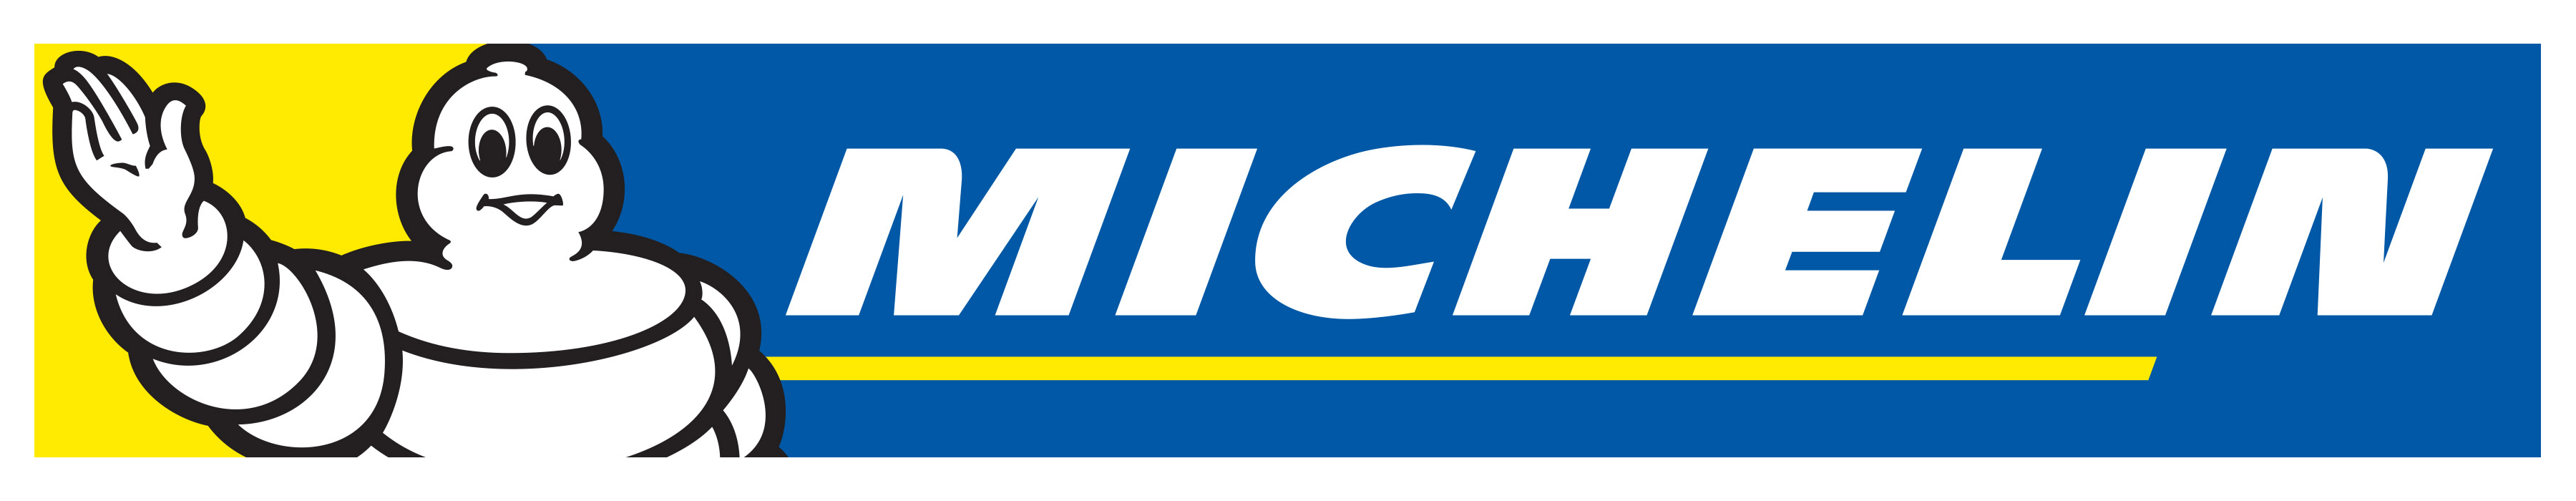 Michelin Logo And Symbol, Mea